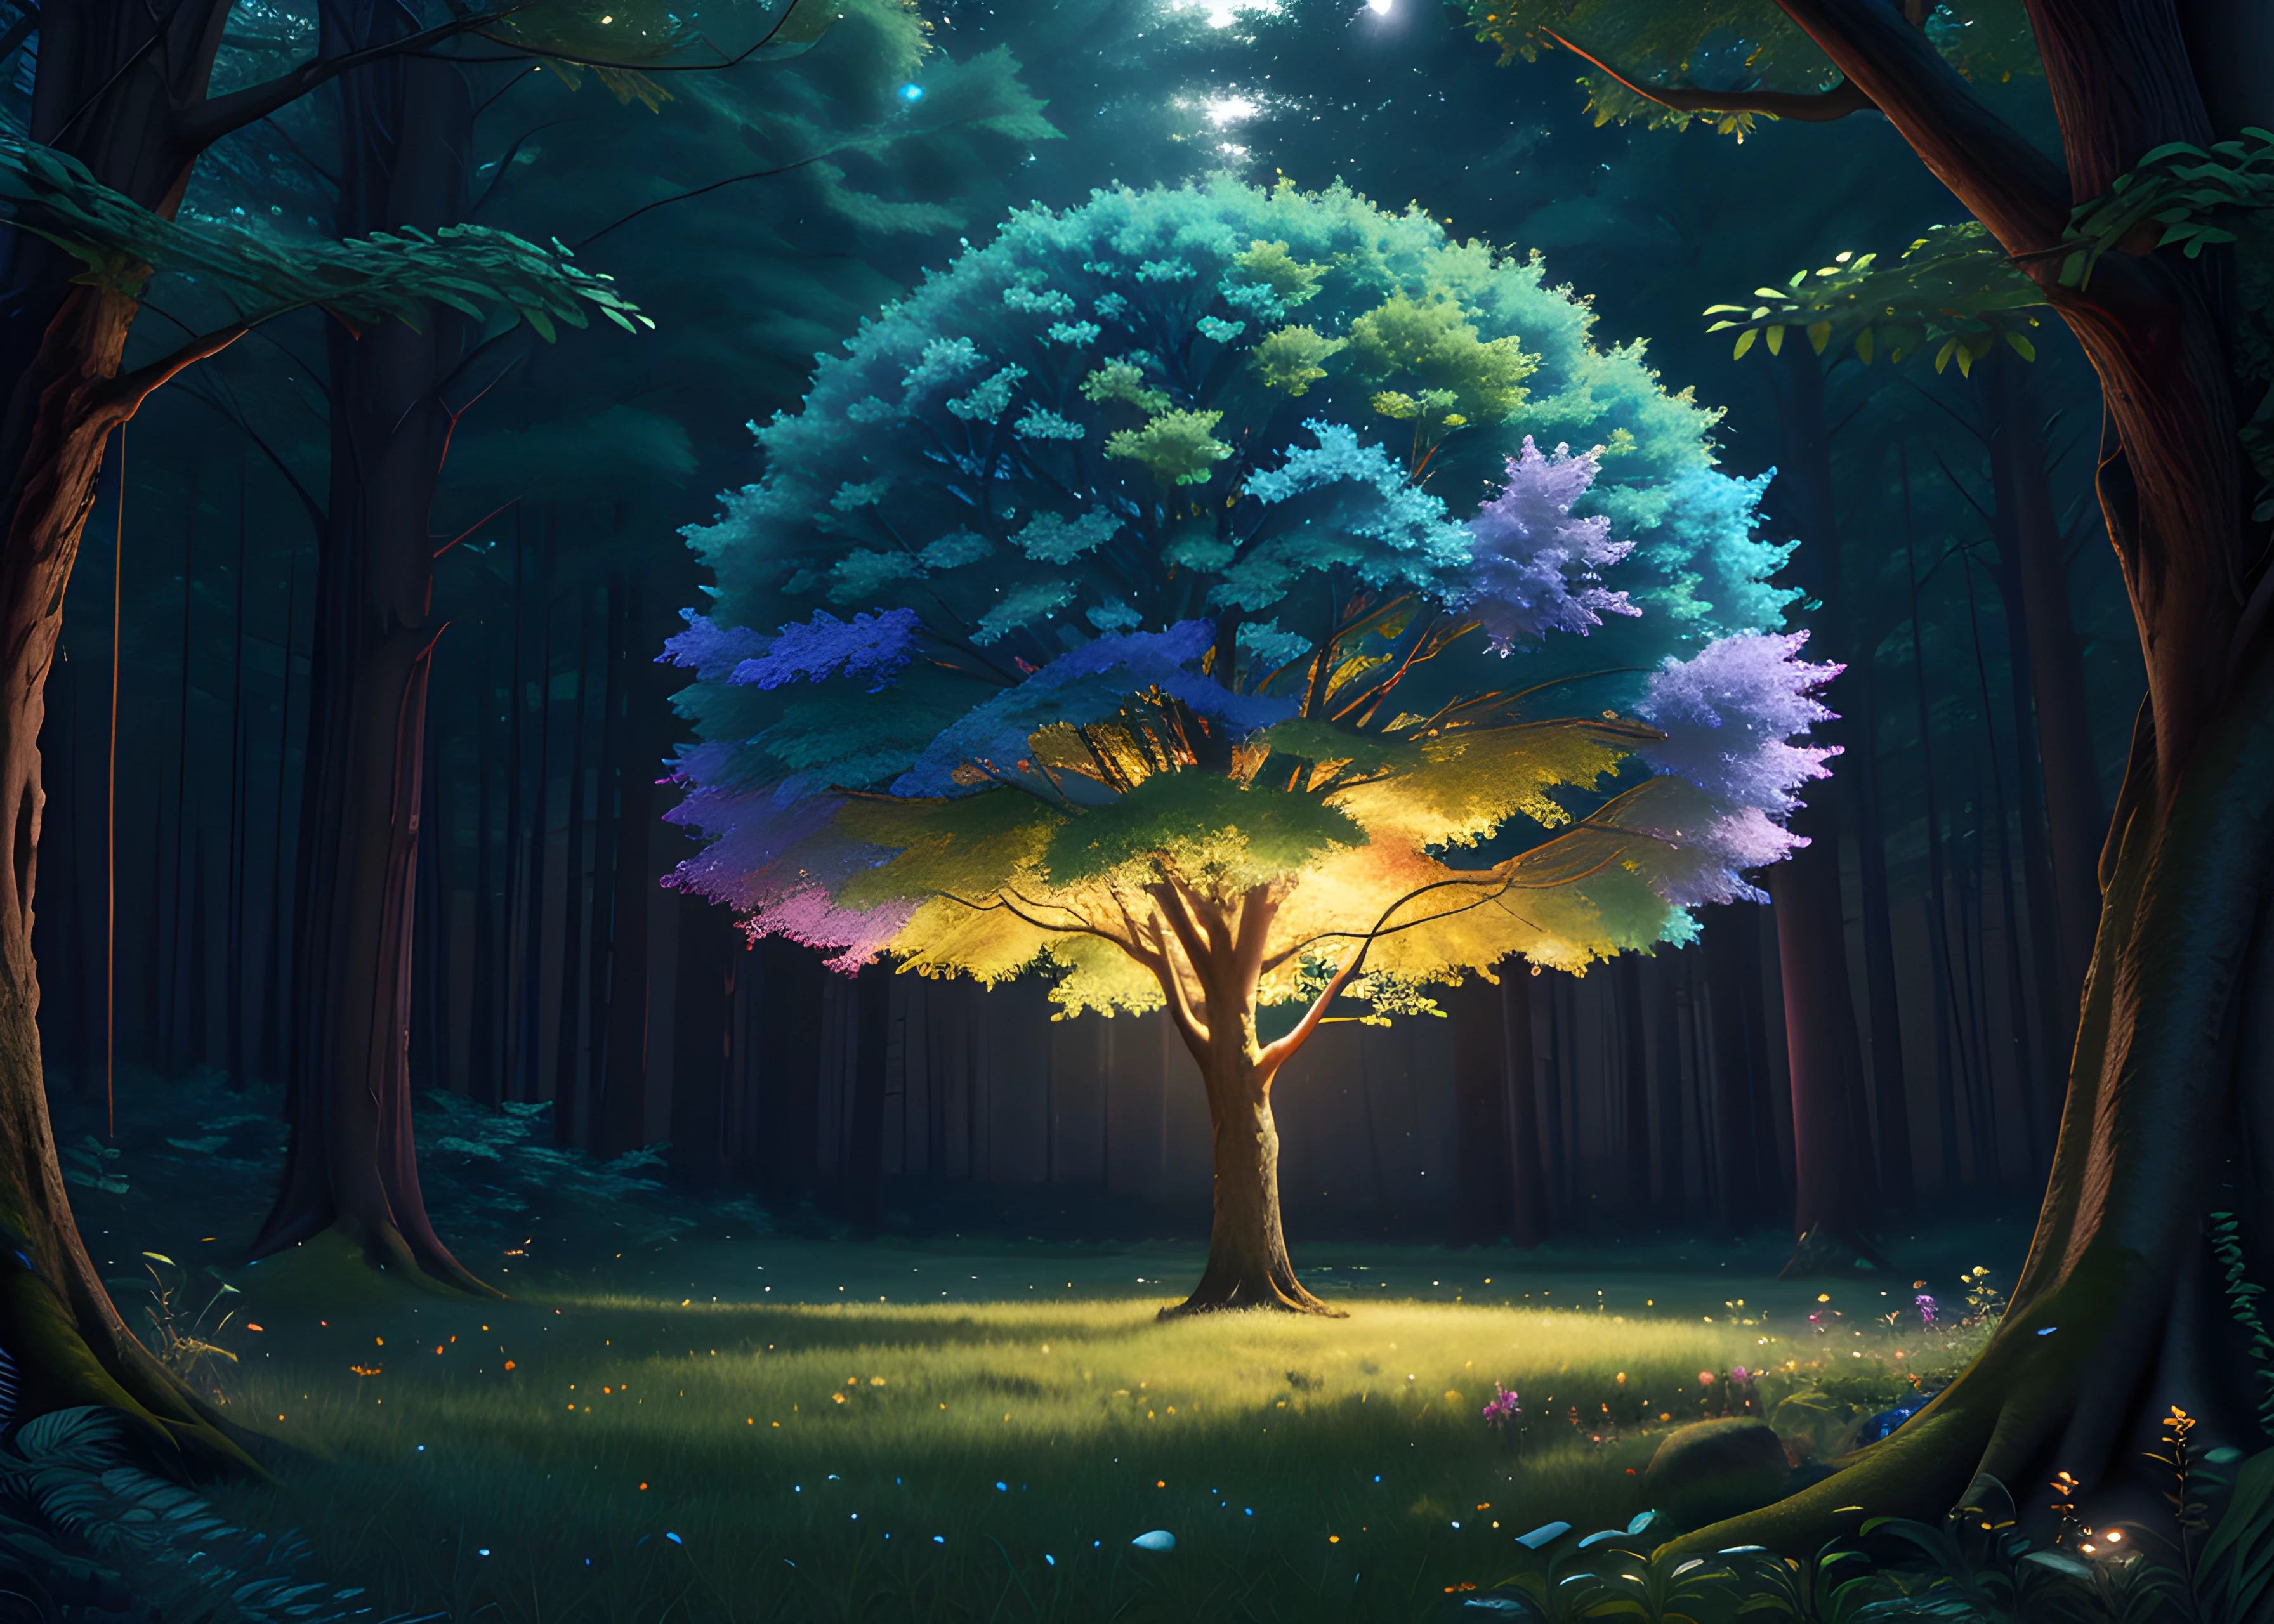 树, 修剪灯, 极其细致的 8K, 阴影, (去噪:0.6), 高分辨率, 杰作, 1个男孩, 8千, 丰富多彩的抽象彩虹情感, 优雅的, 非常详细, 吉卜力工作室, 侧光, 在夜晚雾气弥漫的森林中